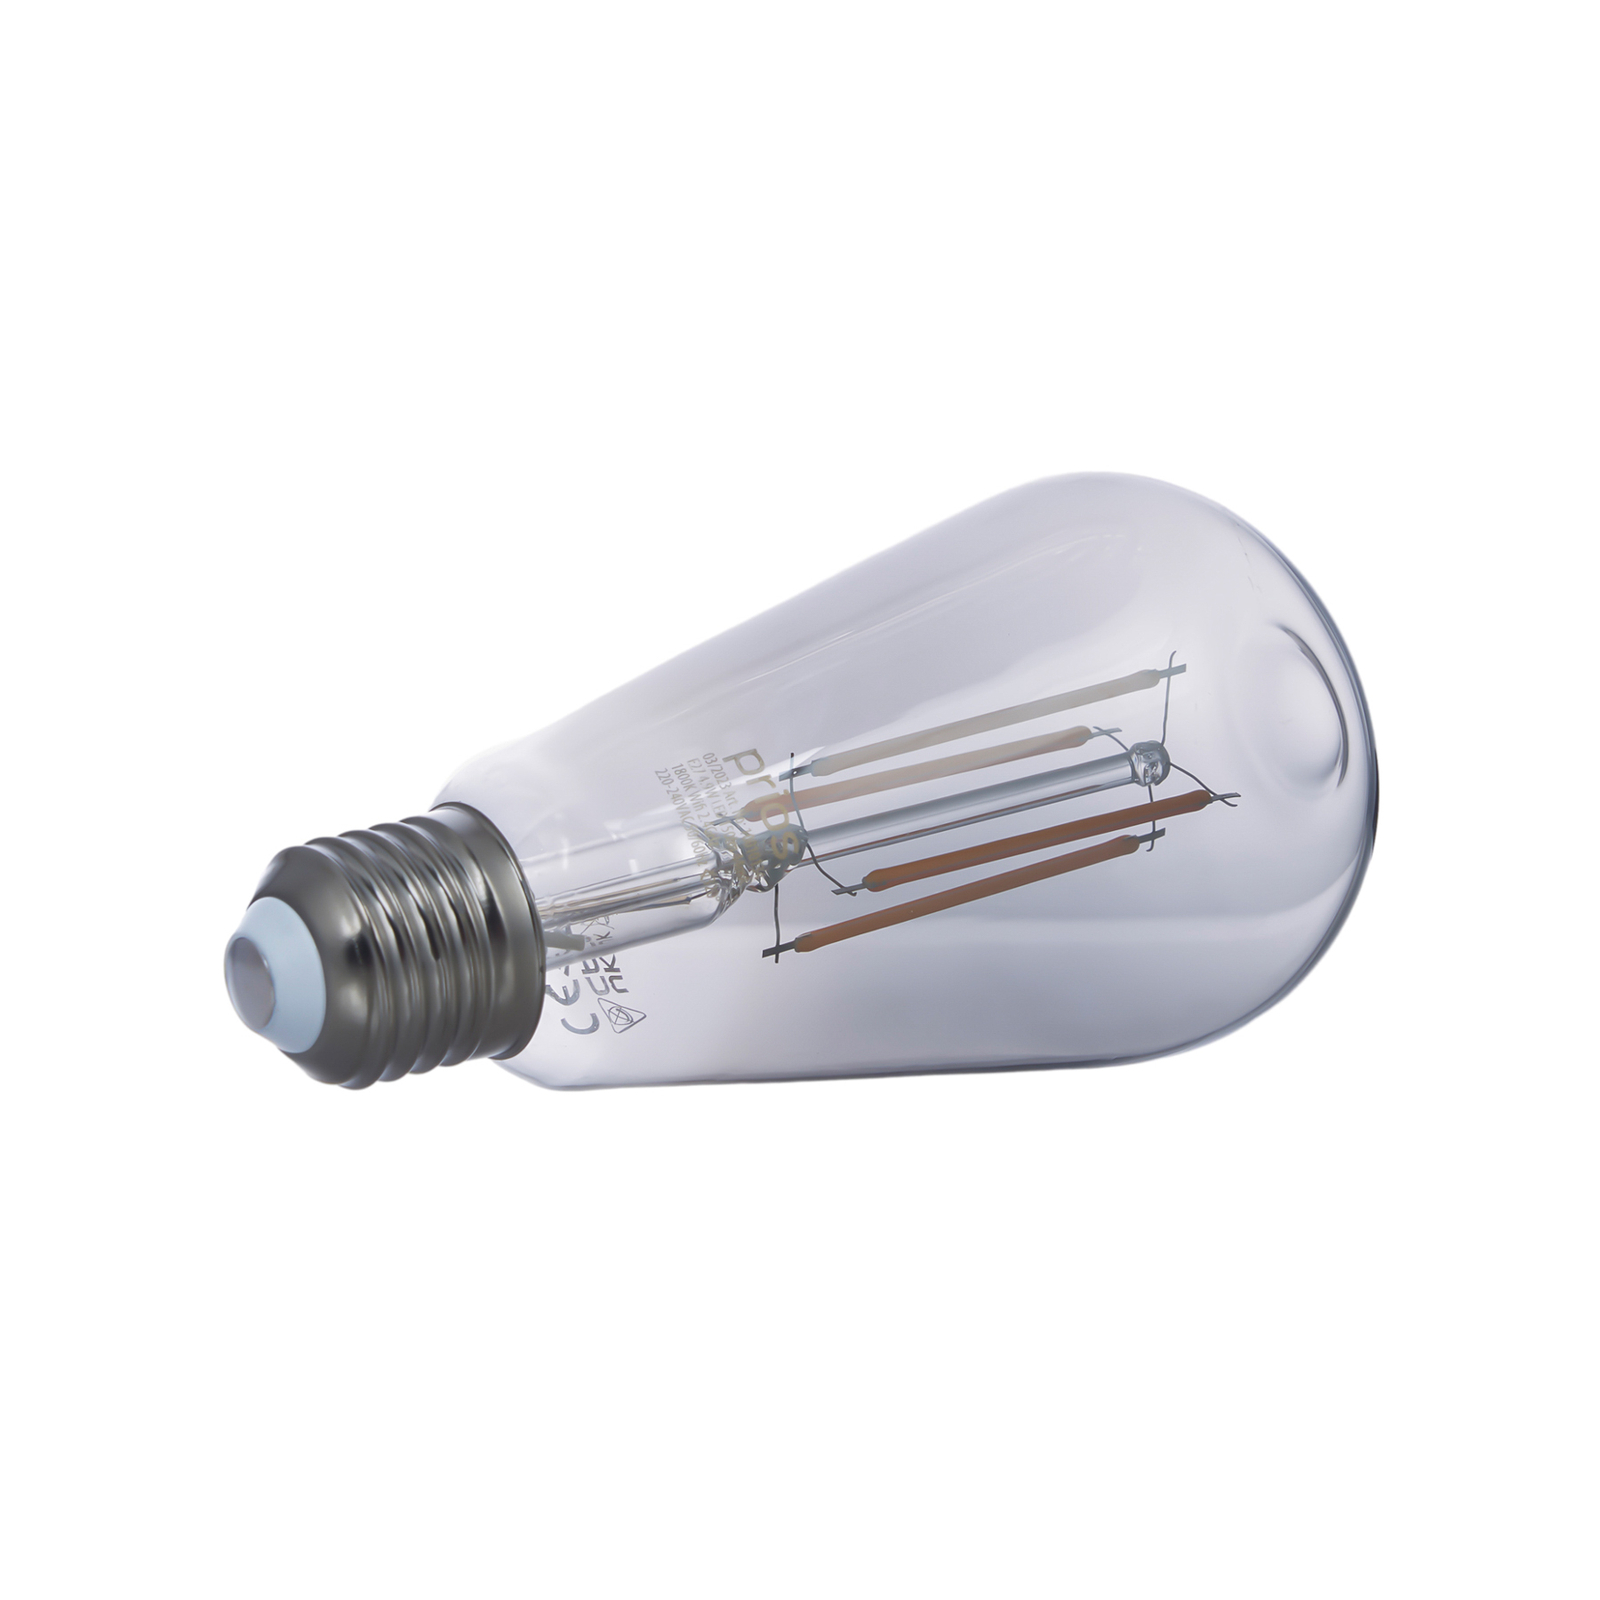 Prios LED-Lampe E27 ST64 rauchgrau WLAN 4,9W 3er